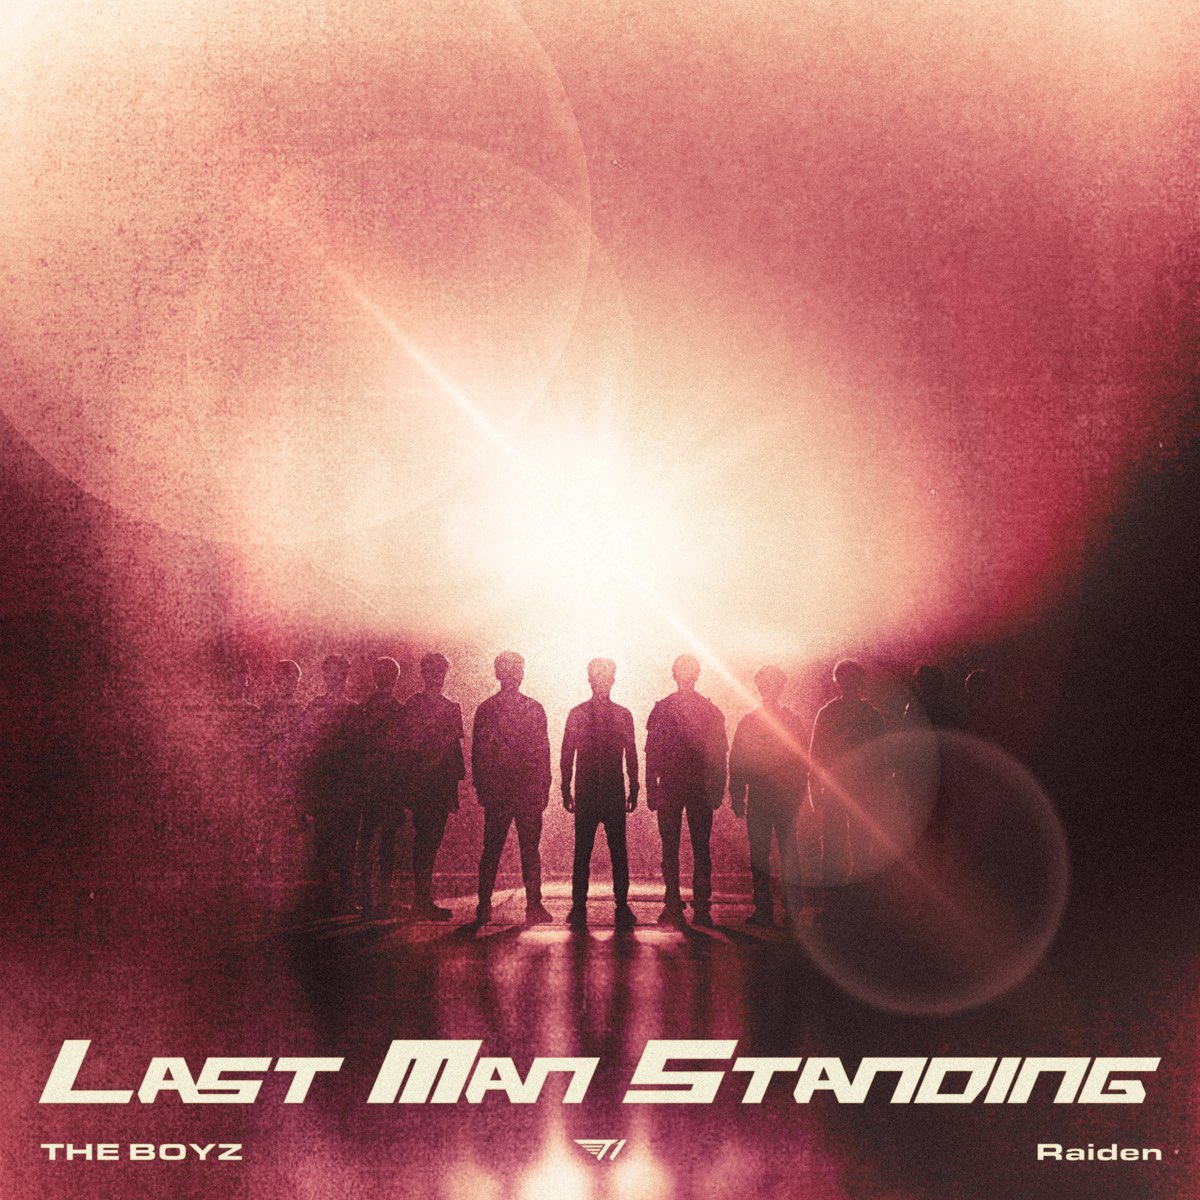 Last man standing песня перевод. Raiden песня. Last man standing (1998). T1 x Raiden, the Boyz 'last man standing. Last man standing the Boyz Lyrics.